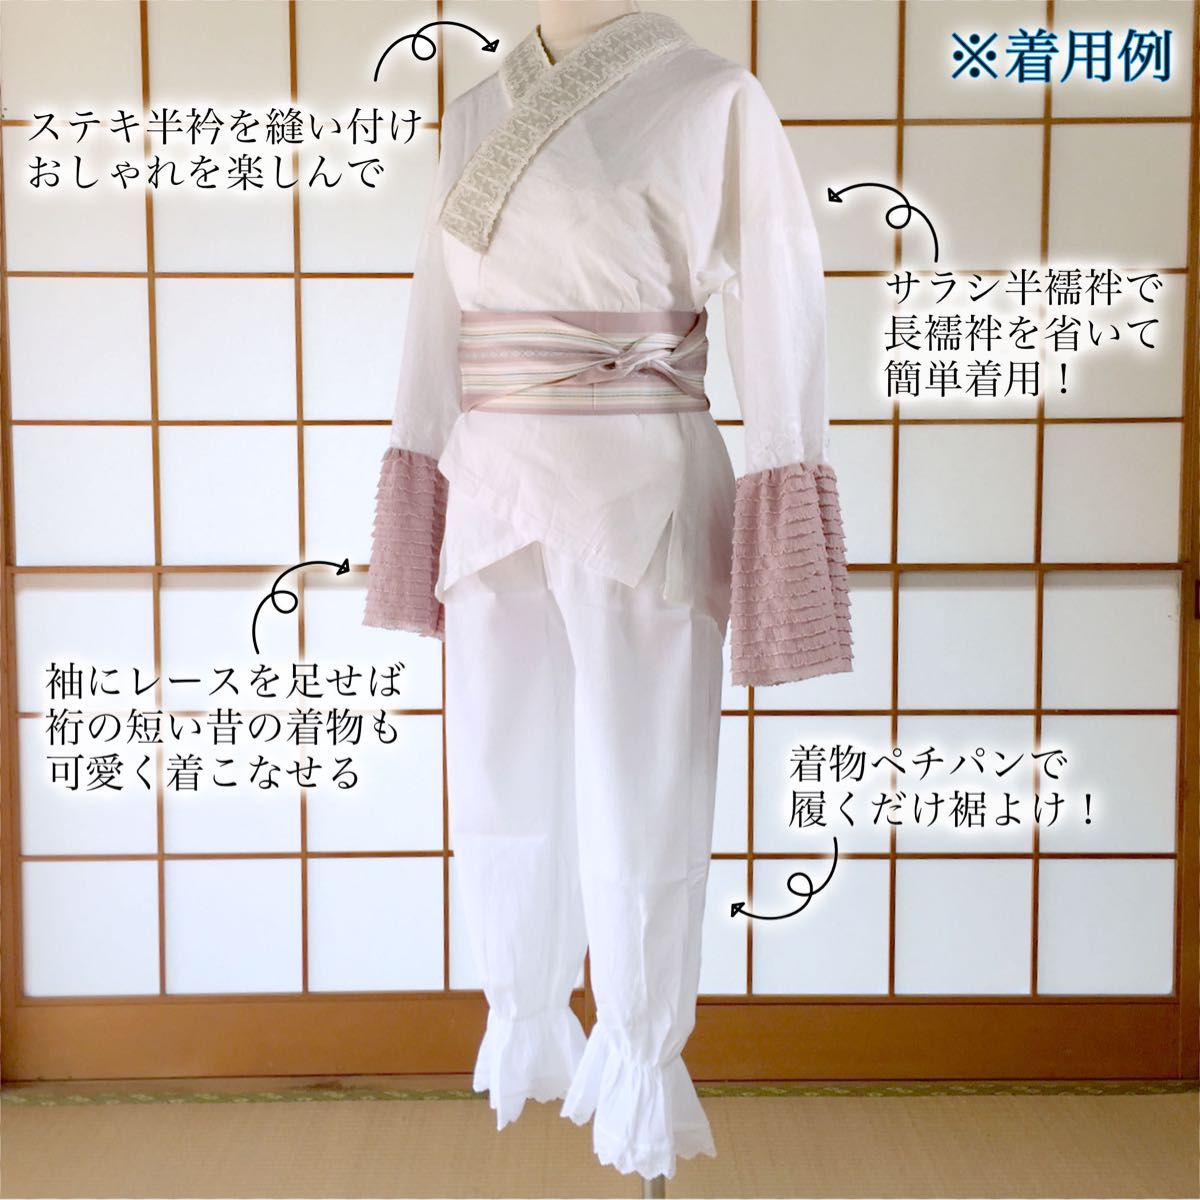 【新品】サラシ半襦袢 LL 塩瀬半衿付き うそつき襦袢 着物下着 日本製 kimonolove